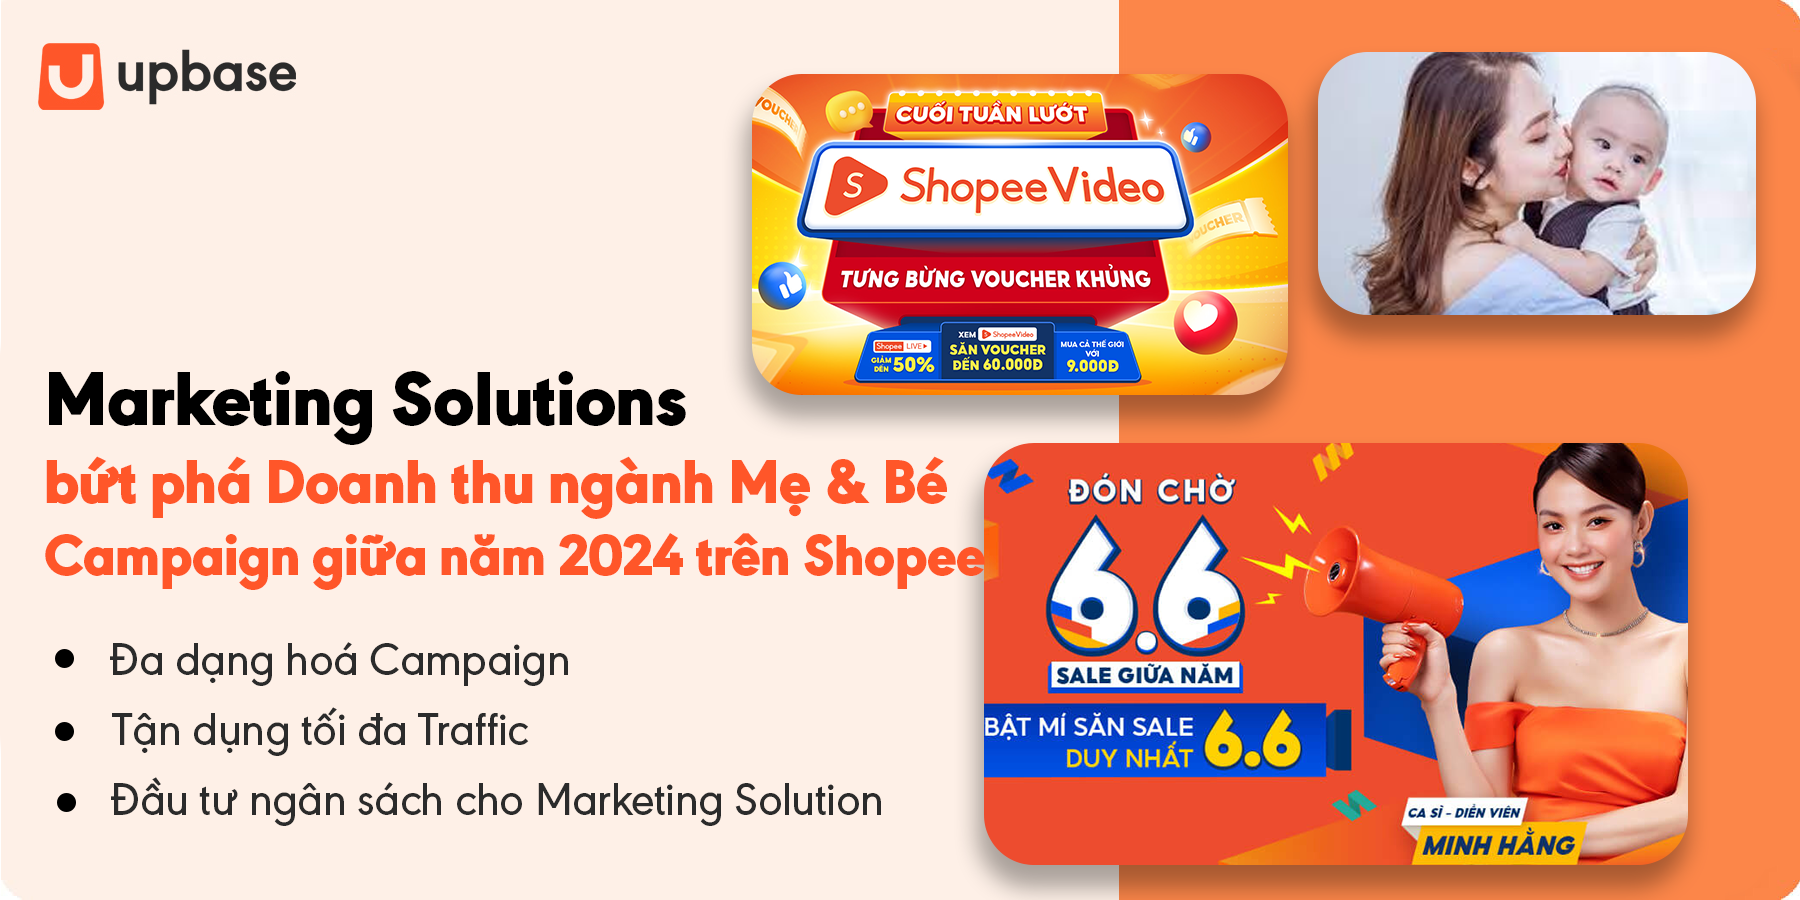 Giải pháp Marketing Solutions bứt phá Doanh thu ngành Mẹ & Bé cho Campaign giữa năm 2024 trên Shopee